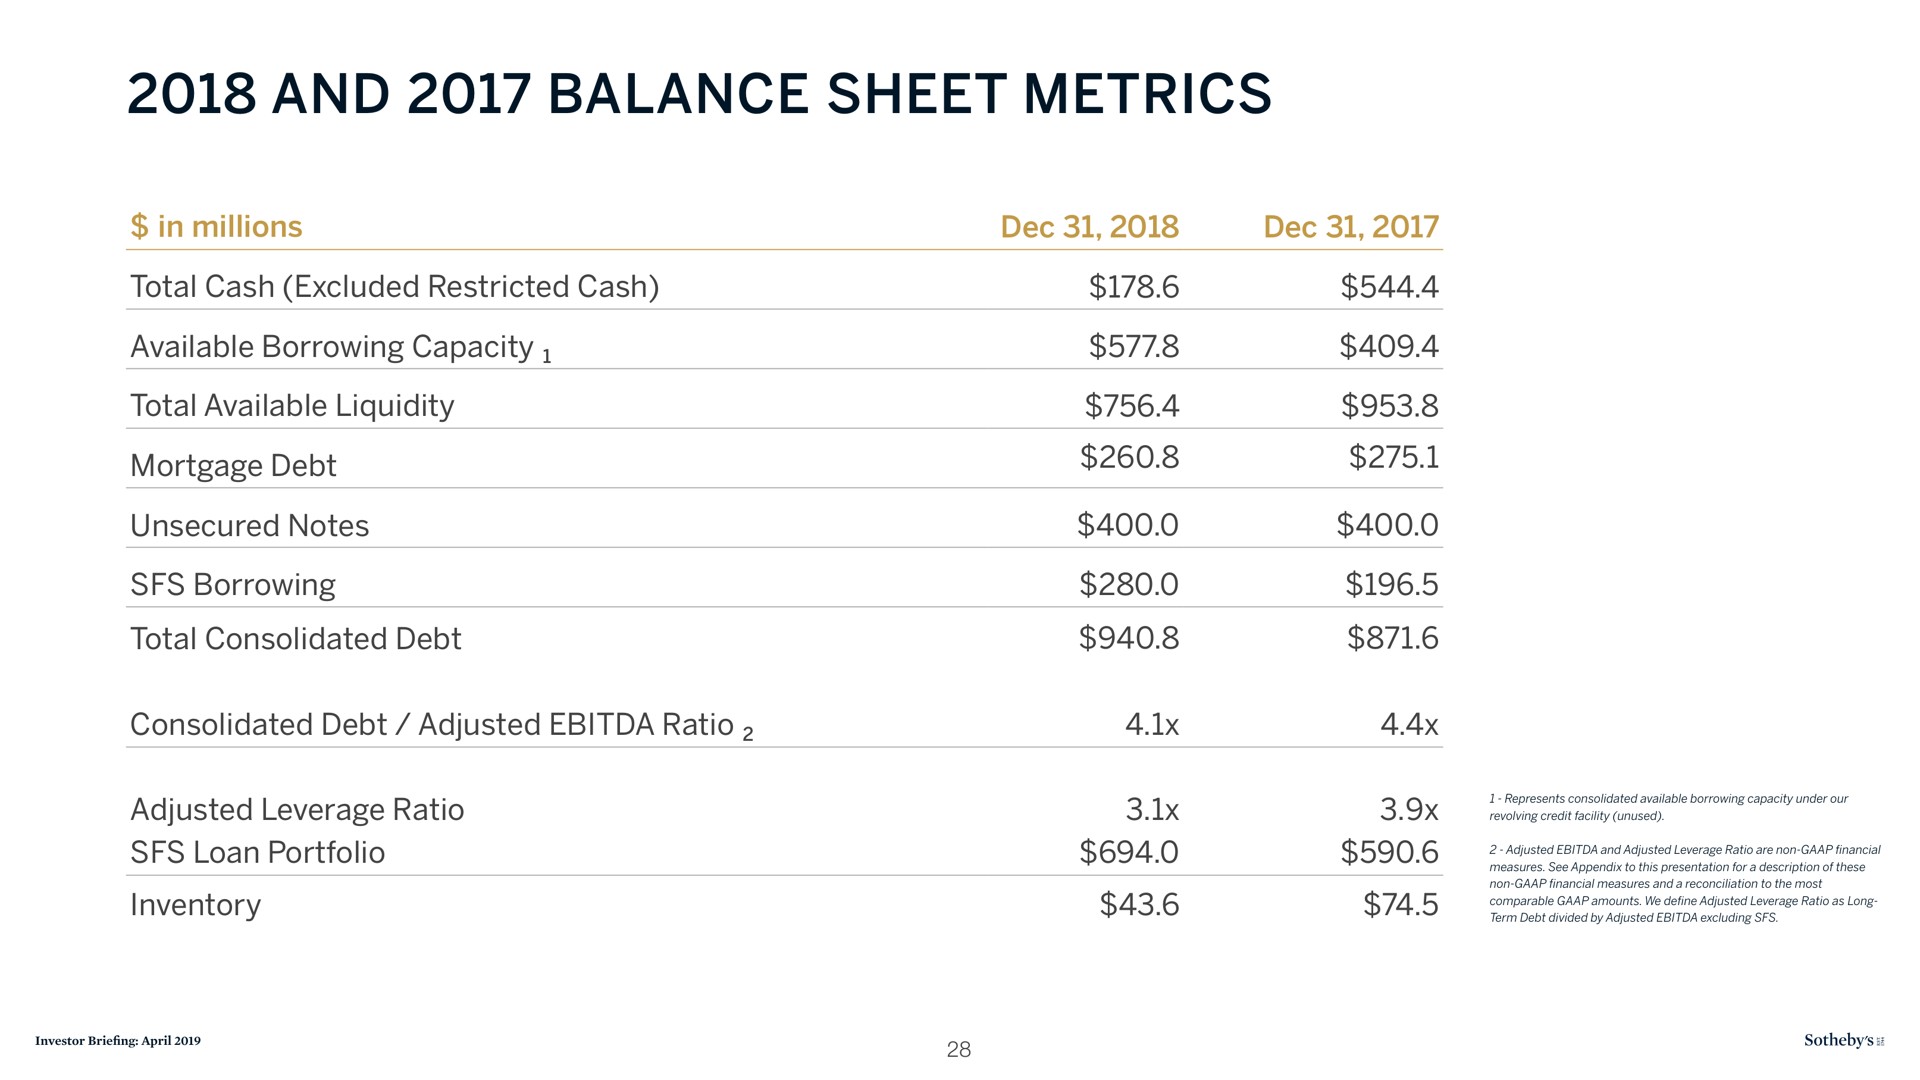 and balance sheet metrics | Sotheby's